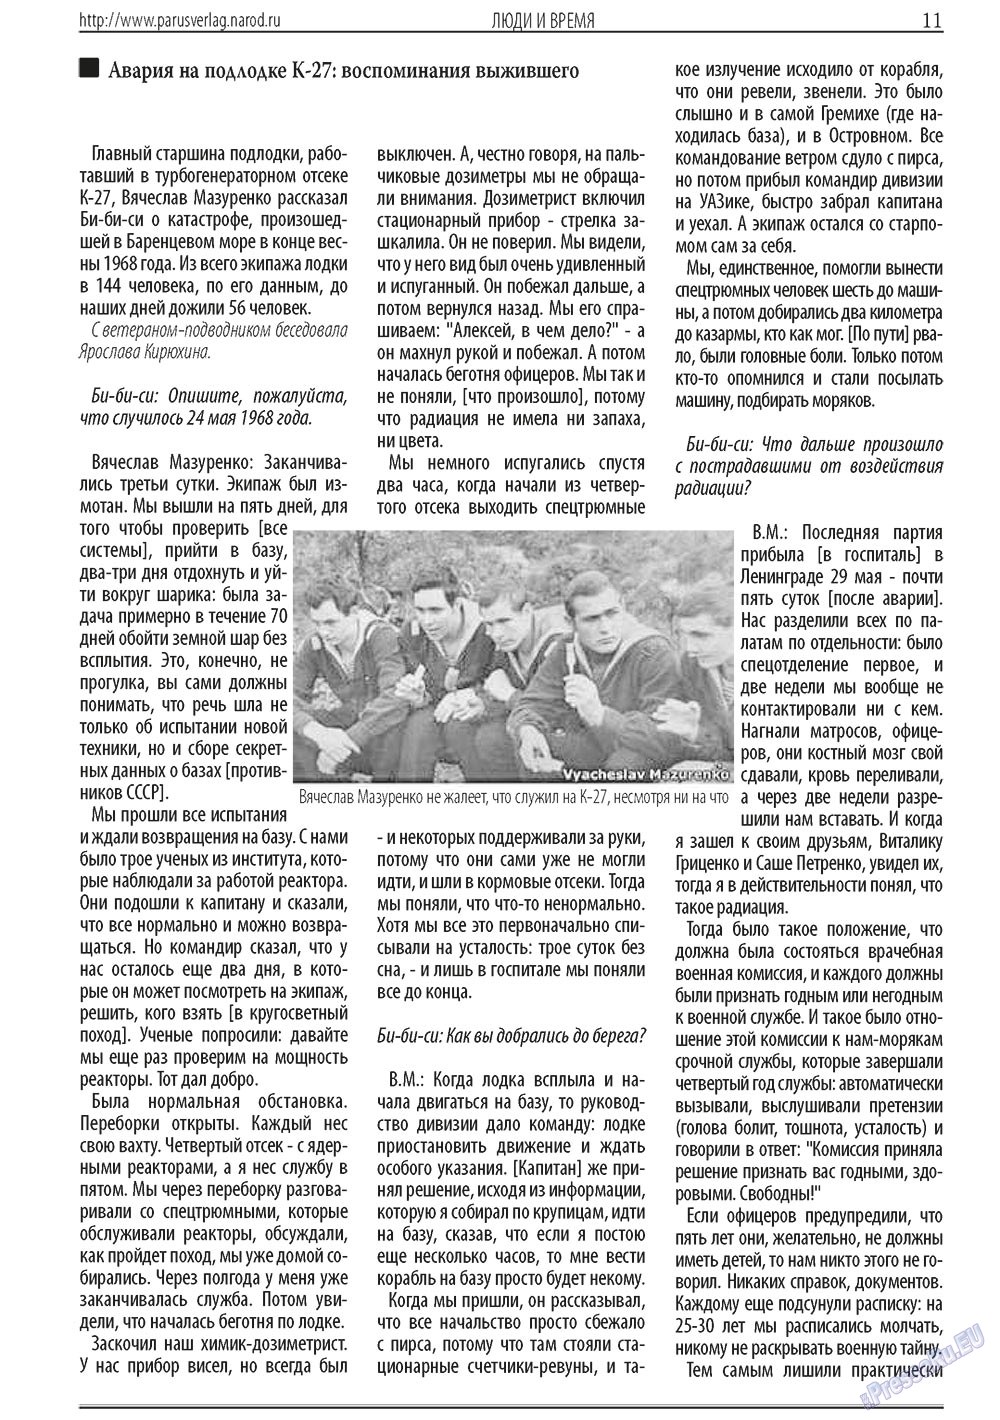 Парус (газета). 2013 год, номер 3, стр. 11